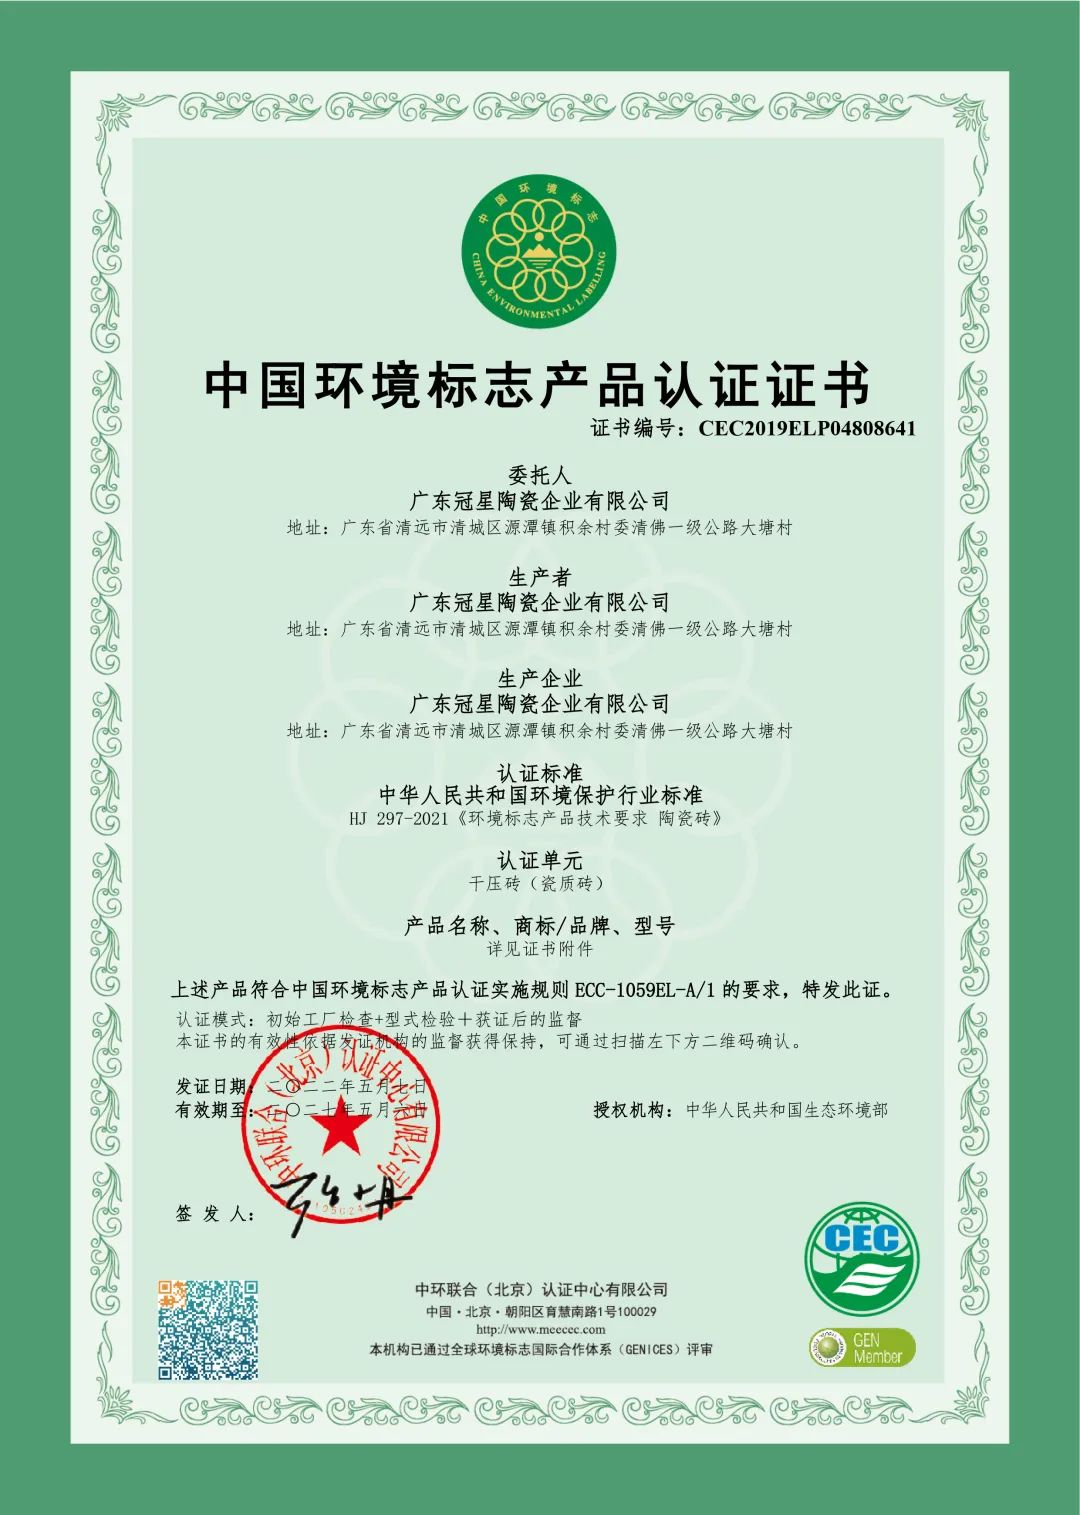 坚持绿色环保生产 美化***人居环境 —— 冠星企业荣获《中国环境标志产品认证证书》